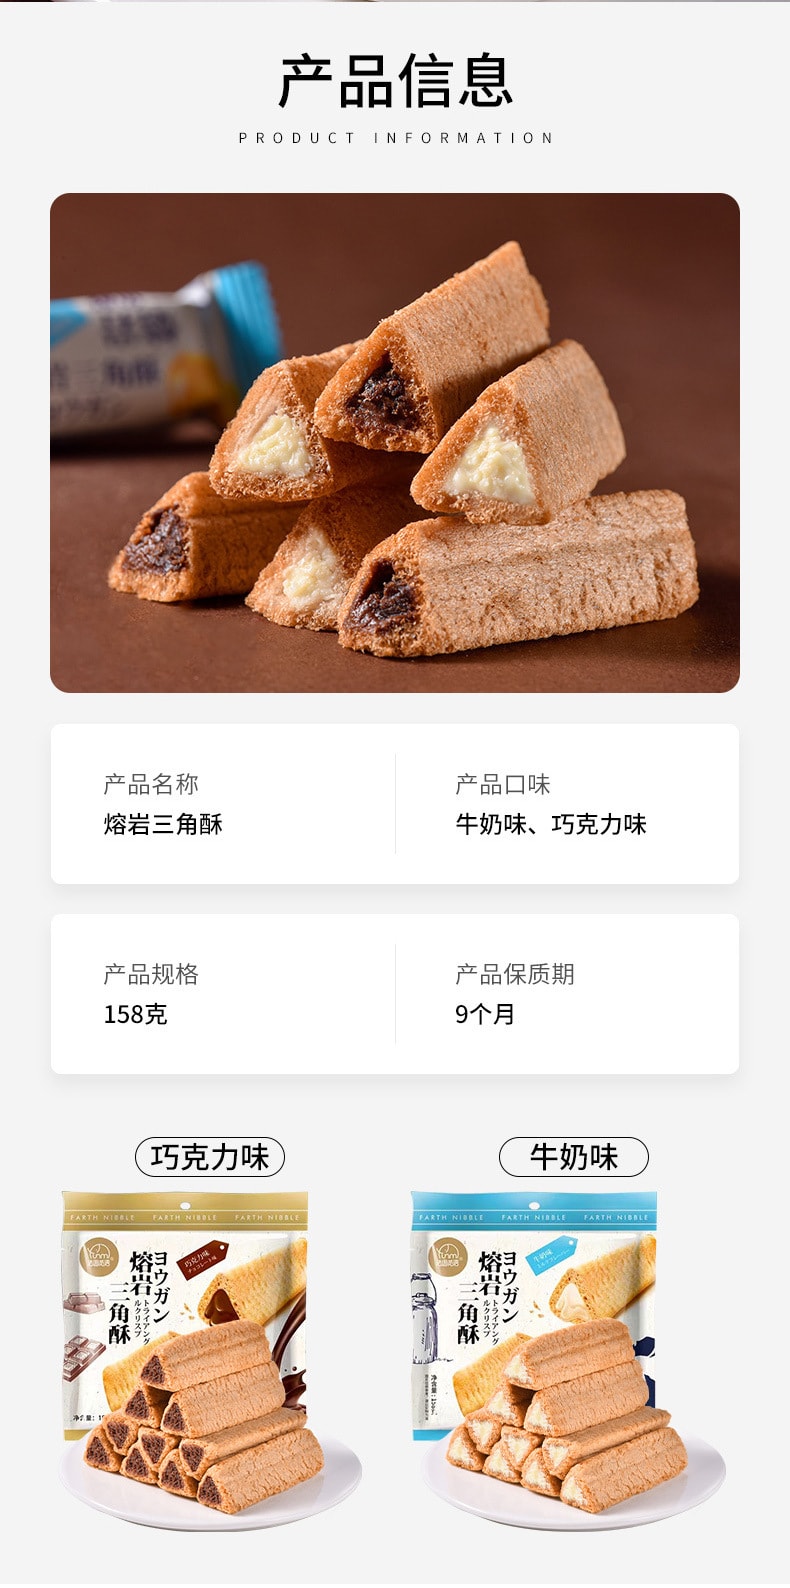 【點心首選】中國 法思覓食 熔岩三角酥金字塔夾心餅乾巧克力下午茶小點心休閒點心 158g 草莓口味 一袋